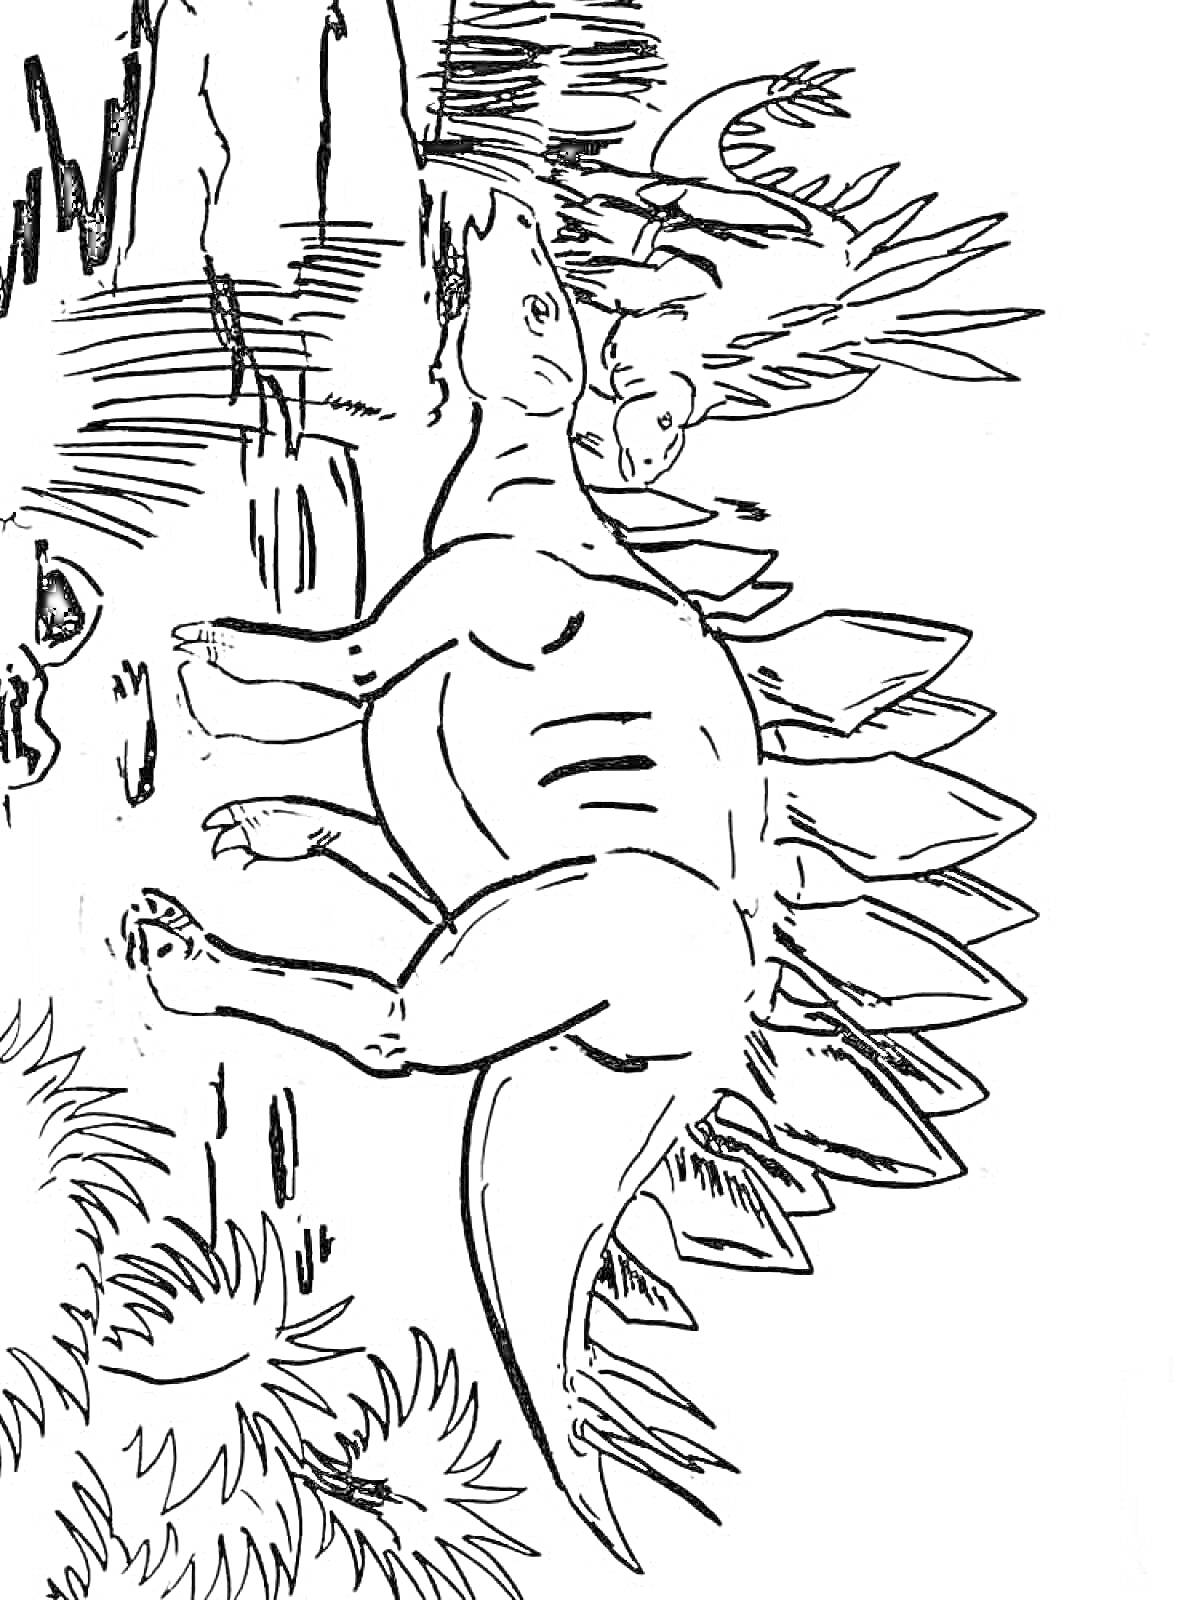 Два динозавра возле скал и растений